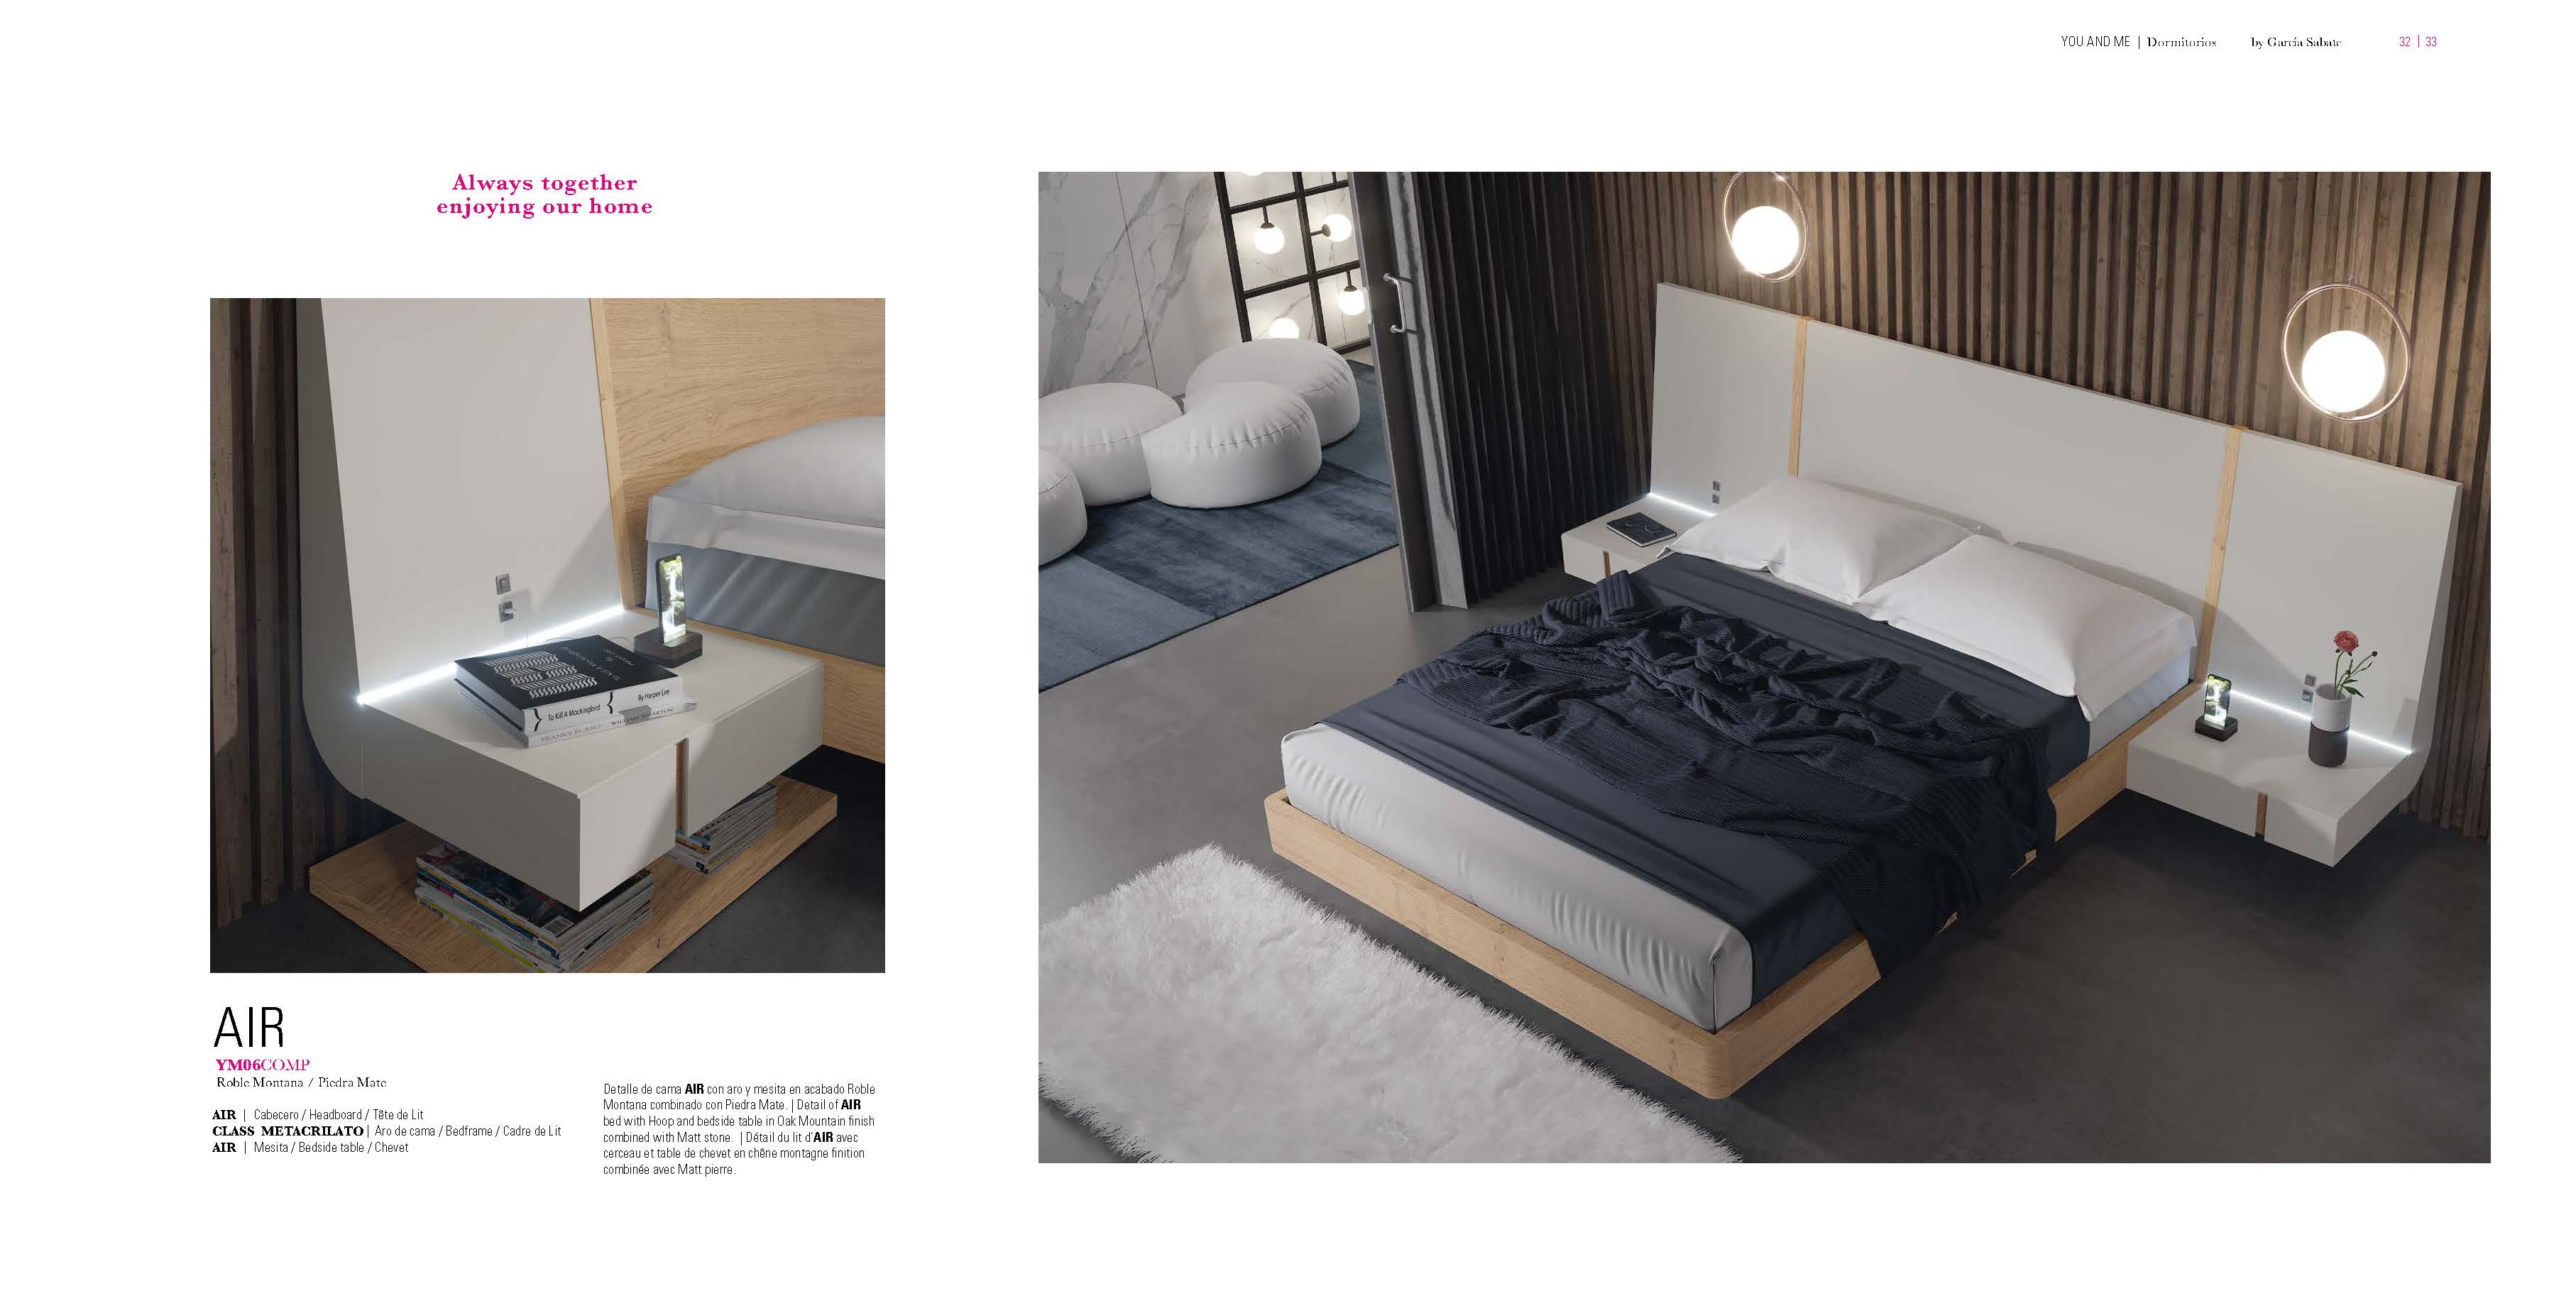 Bedroom Furniture Beds YM06